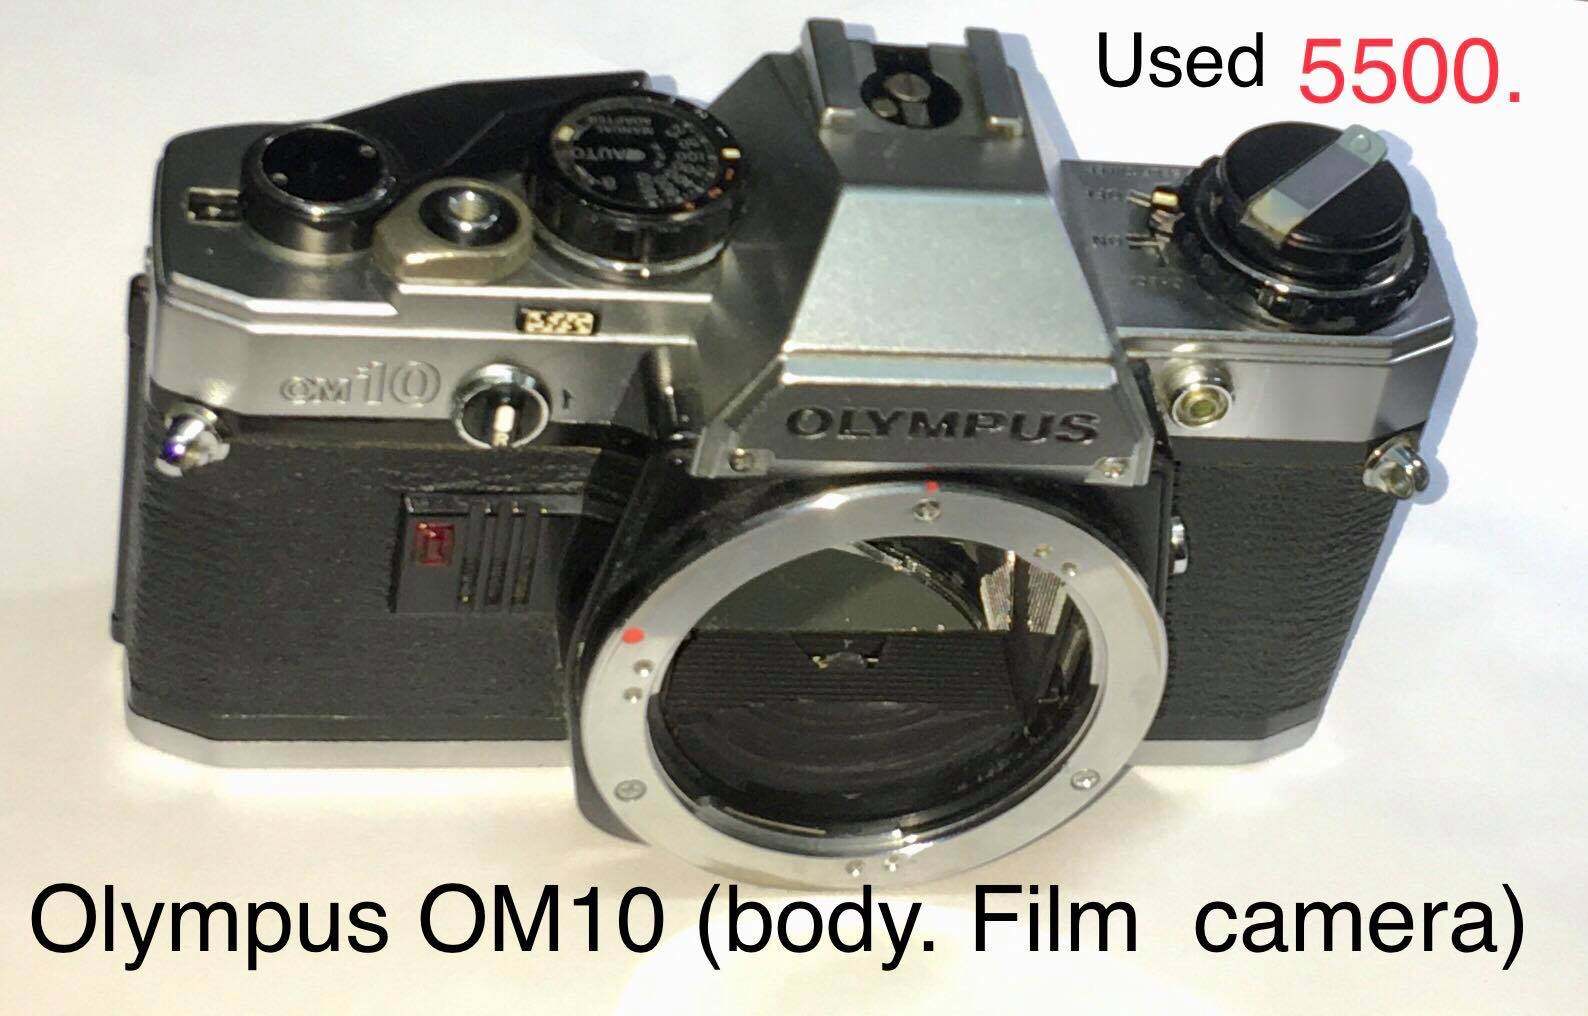 กล้องฟิล์ม (Film) OLYMPUS OM10 Body - มือ2 สภาพดี เชื่อถือได้ ใช้งานได้ดีทุกระบบ รับประกันสินค้า 90 วัน